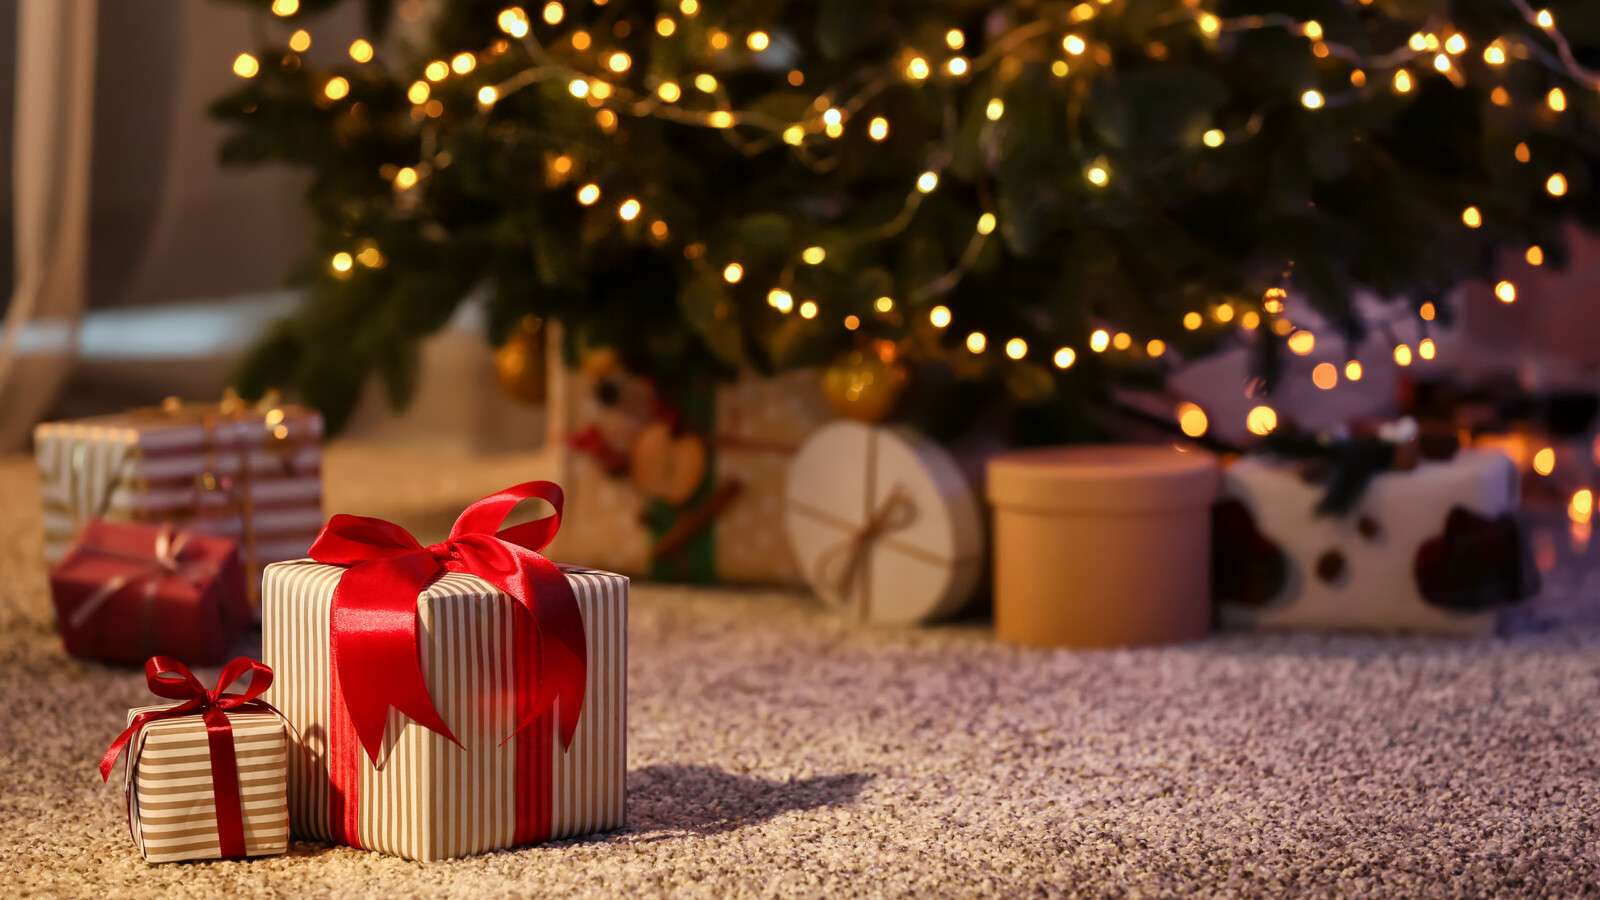 Geschenke auf dem Teppich vor einem Weihnachtsbaum mit Lichterkette